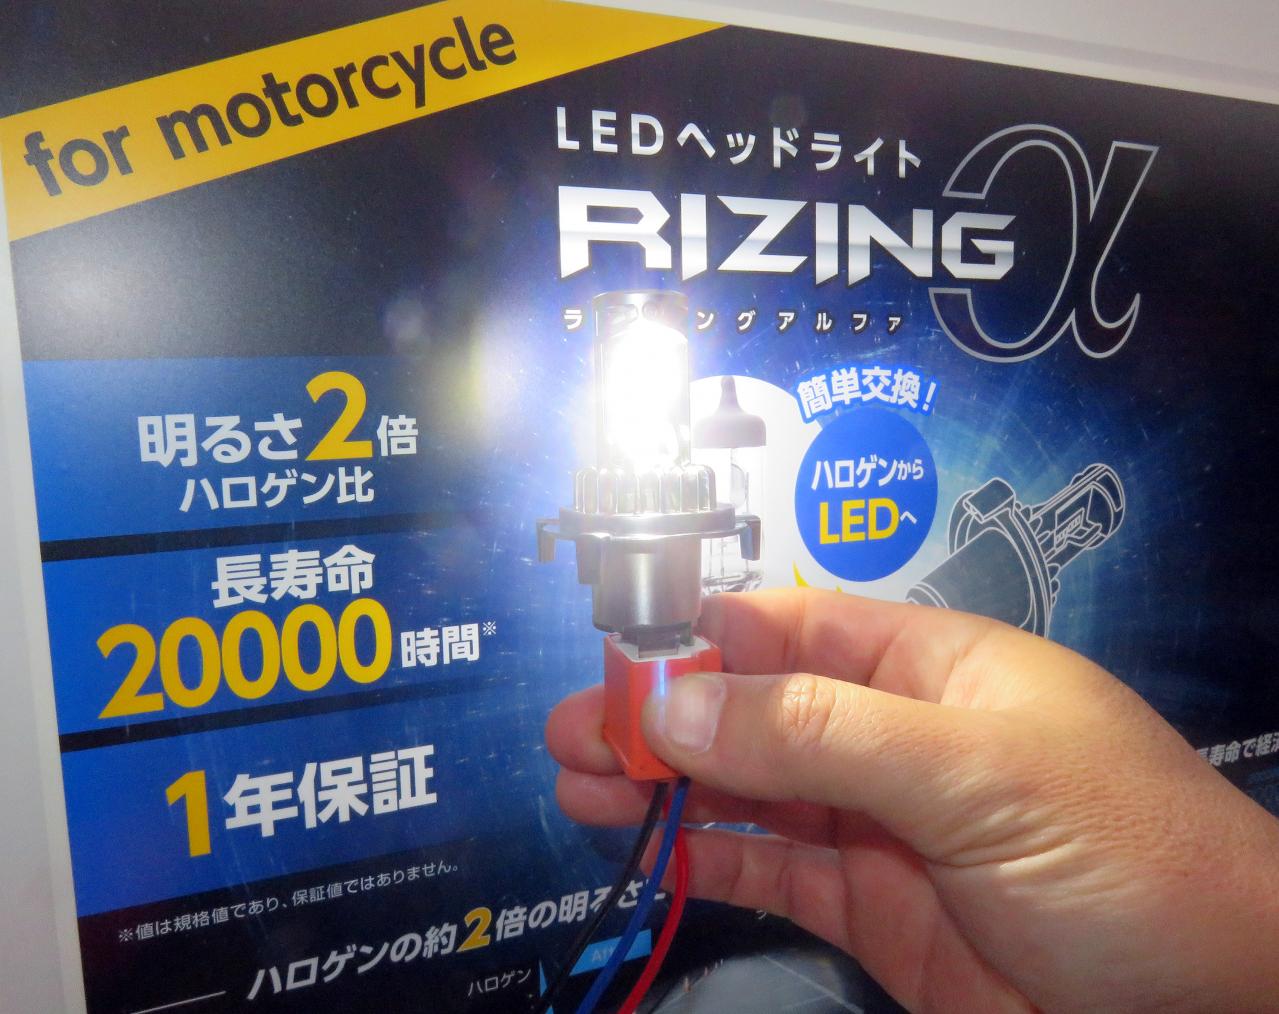 ハロゲン Ledバルブ化も今時は超簡単 コンパクト設計の新型ledバルブ Sphere Light Rizig A 東京オートサロン Motor Fan Bikes モータファンバイクス